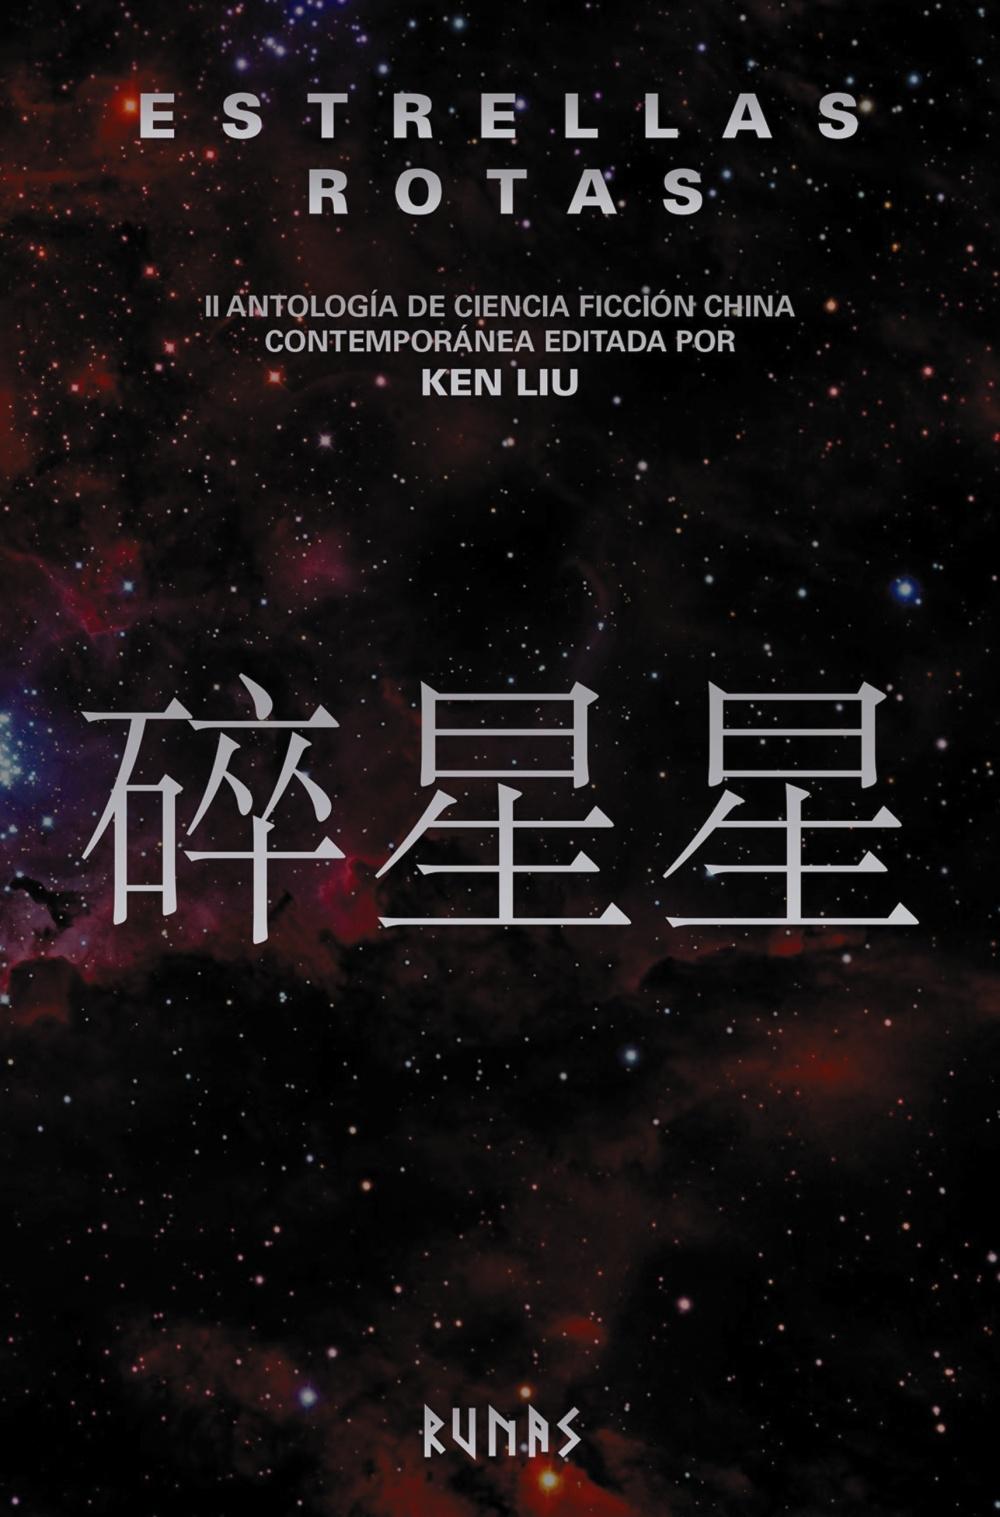 Estrellas rotas "II antología de ciencia ficción china contemporánea editada por Ken Liu". 